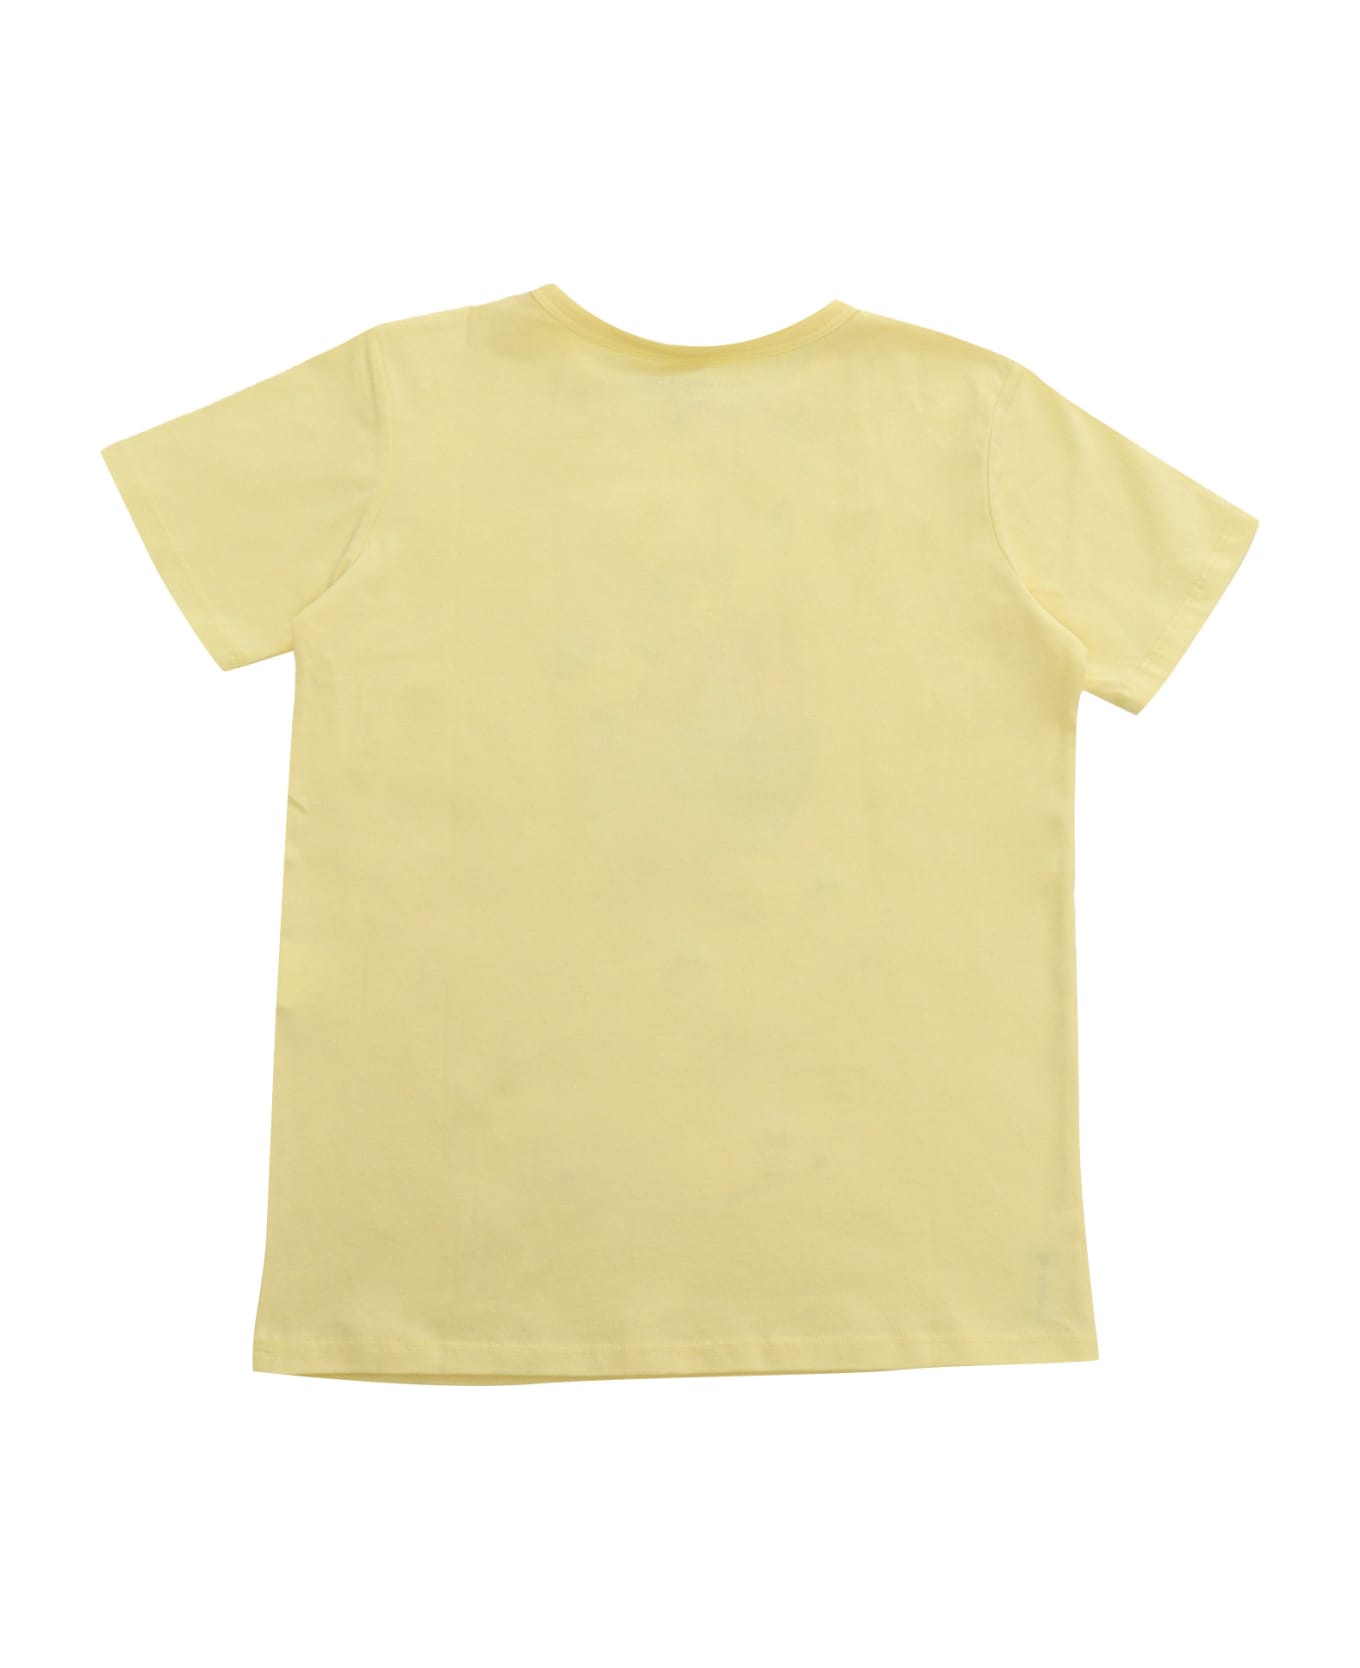 Stella McCartney Kids Yellow T-shirt With Print - YELLOW